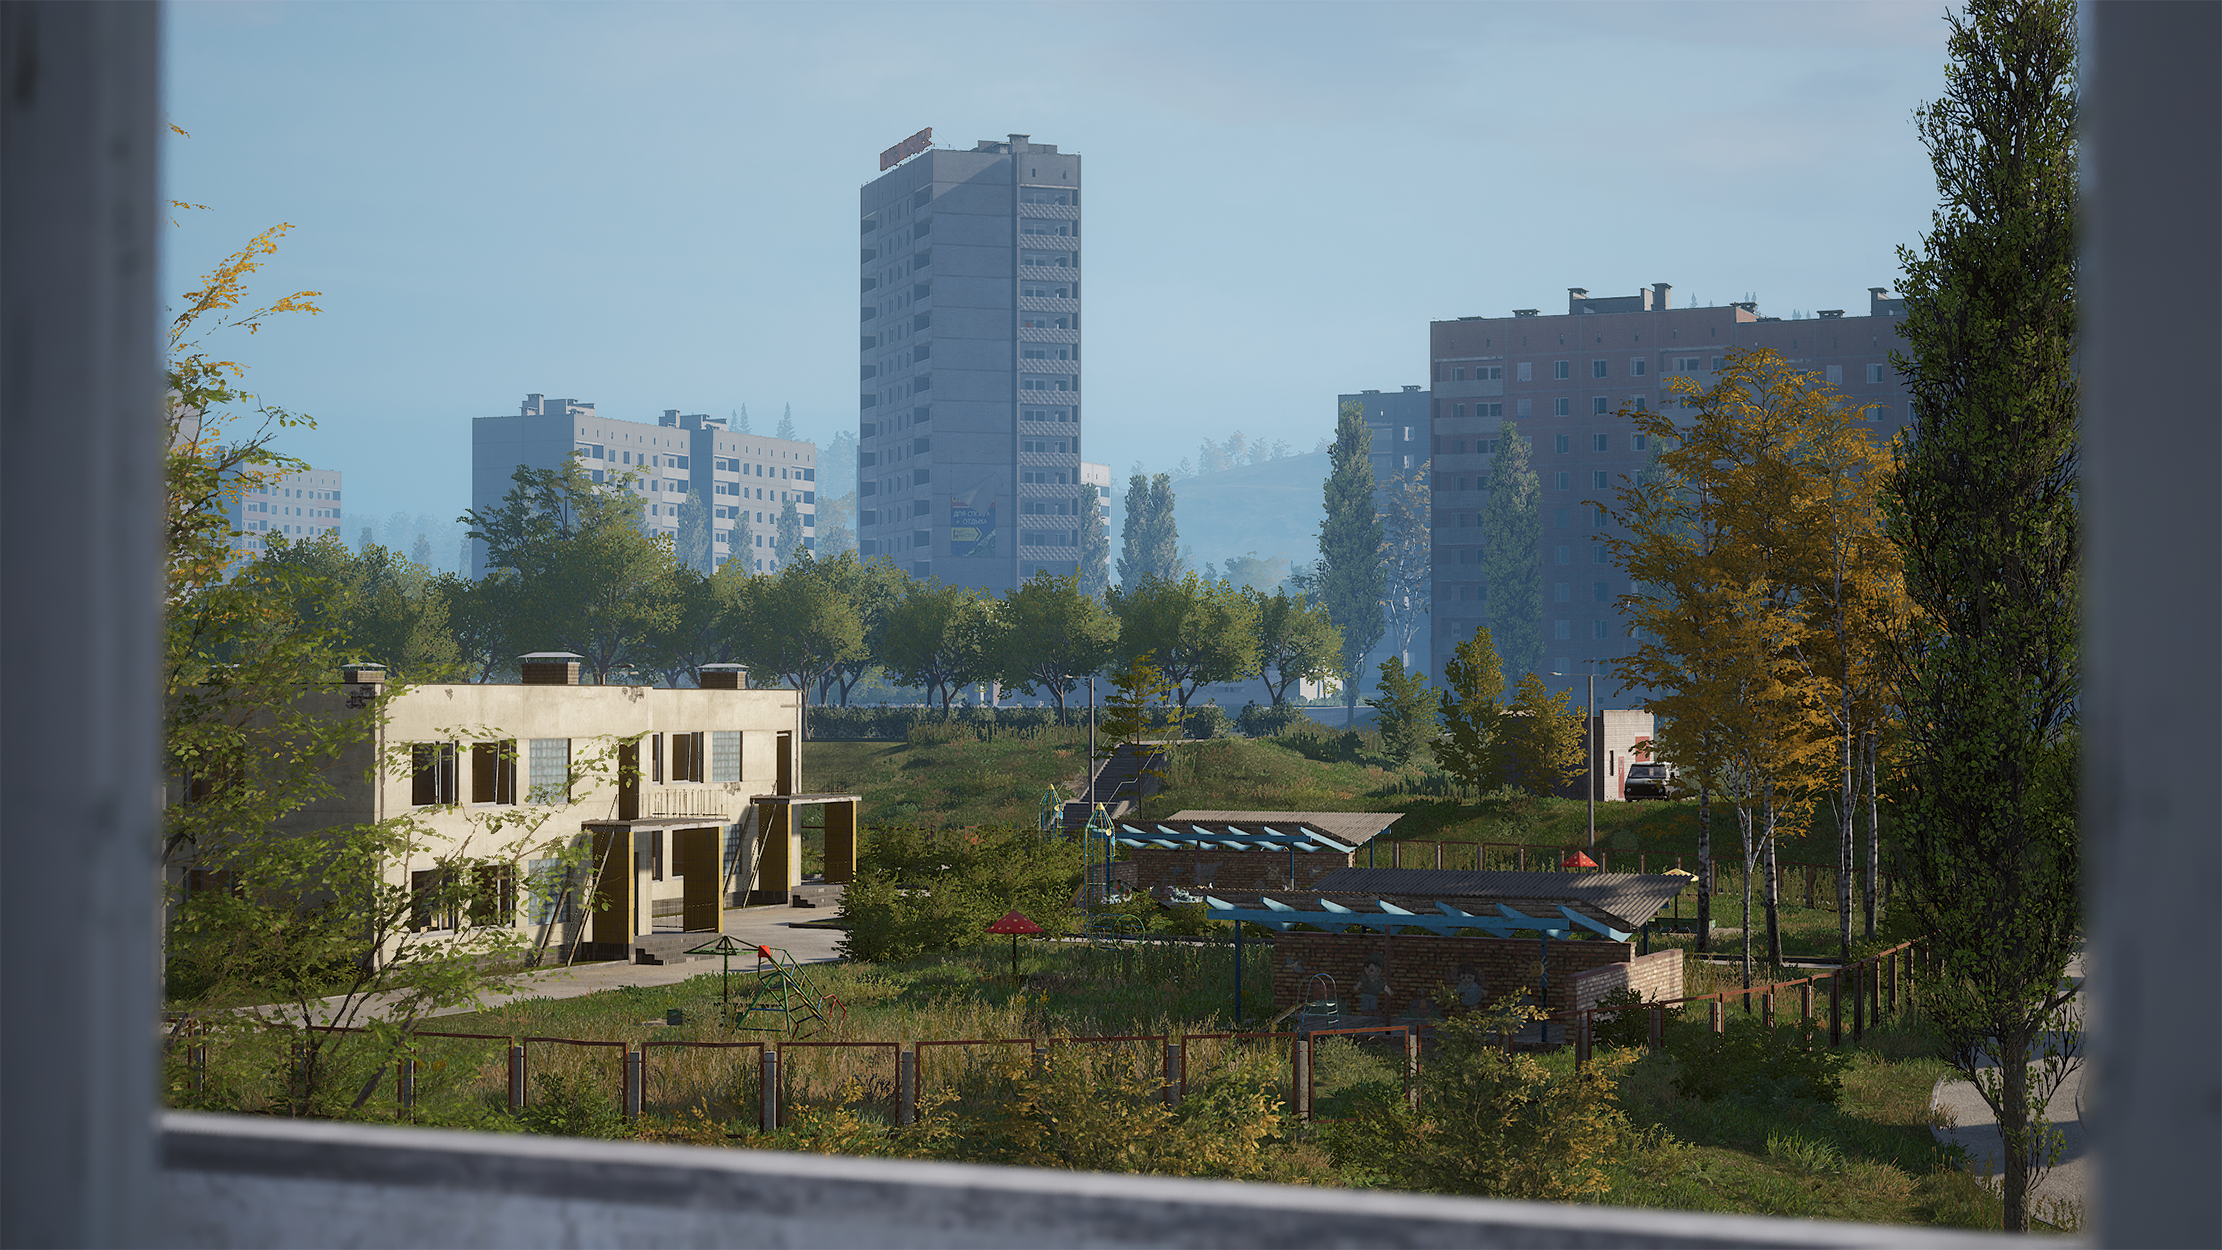 New city Kamensk released in v0.10.0 Deadside update.